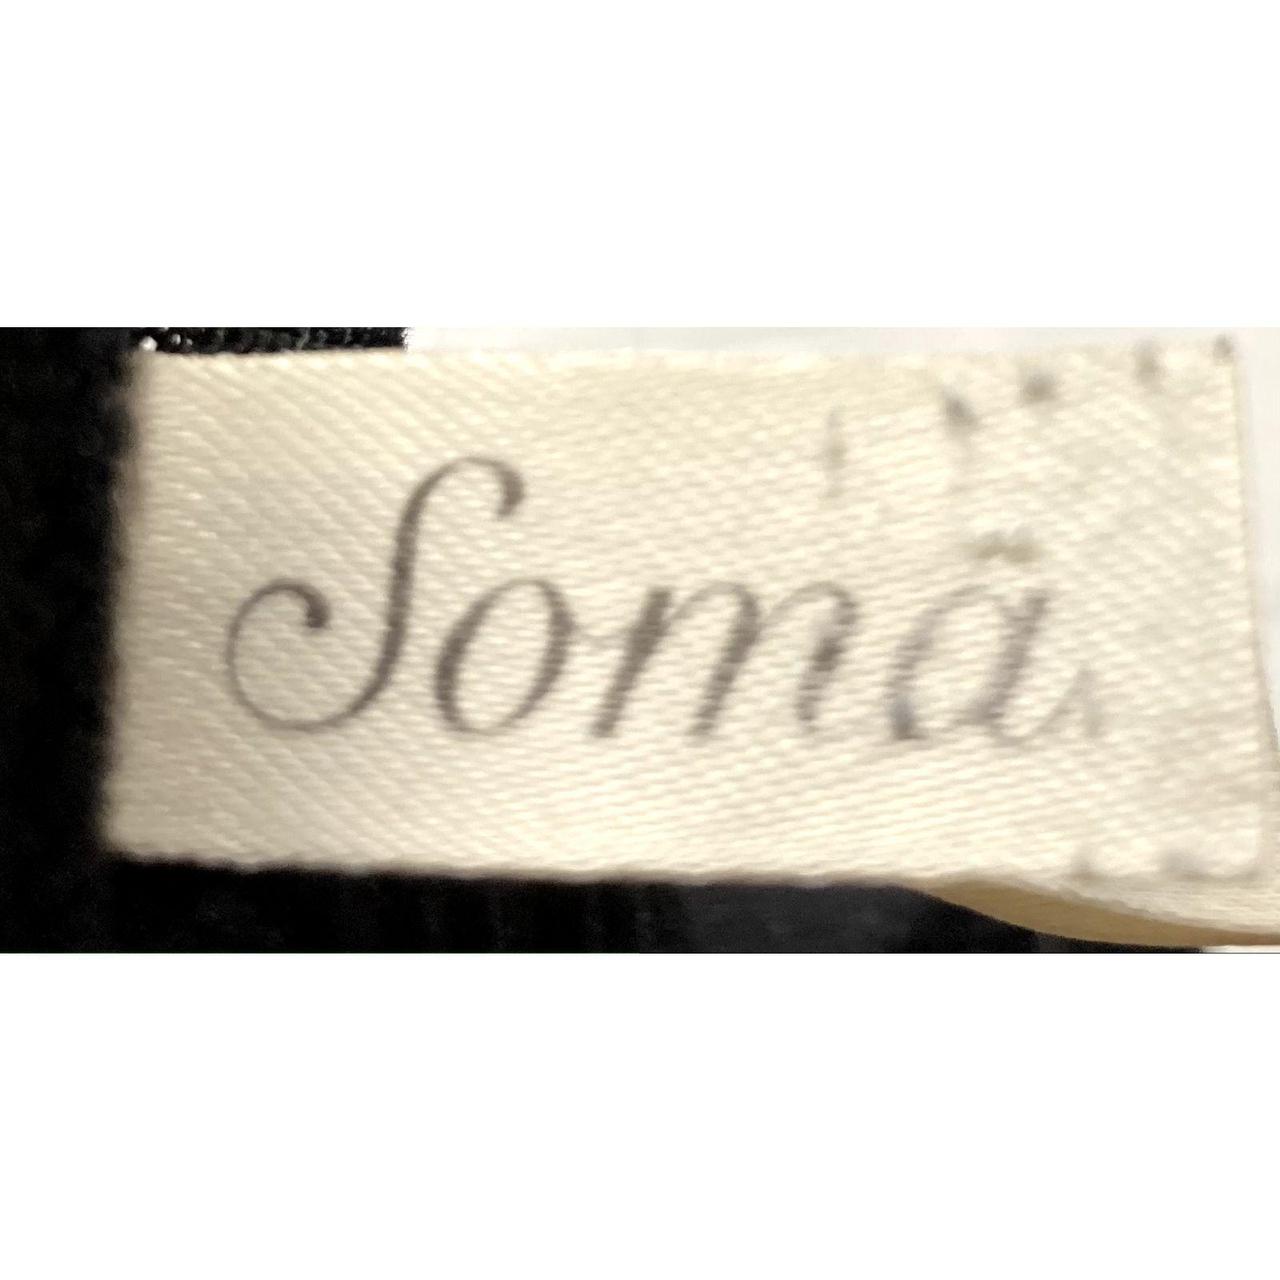 Soma Sensuous Bra 38D 38 D Black Lace Unlined - Depop